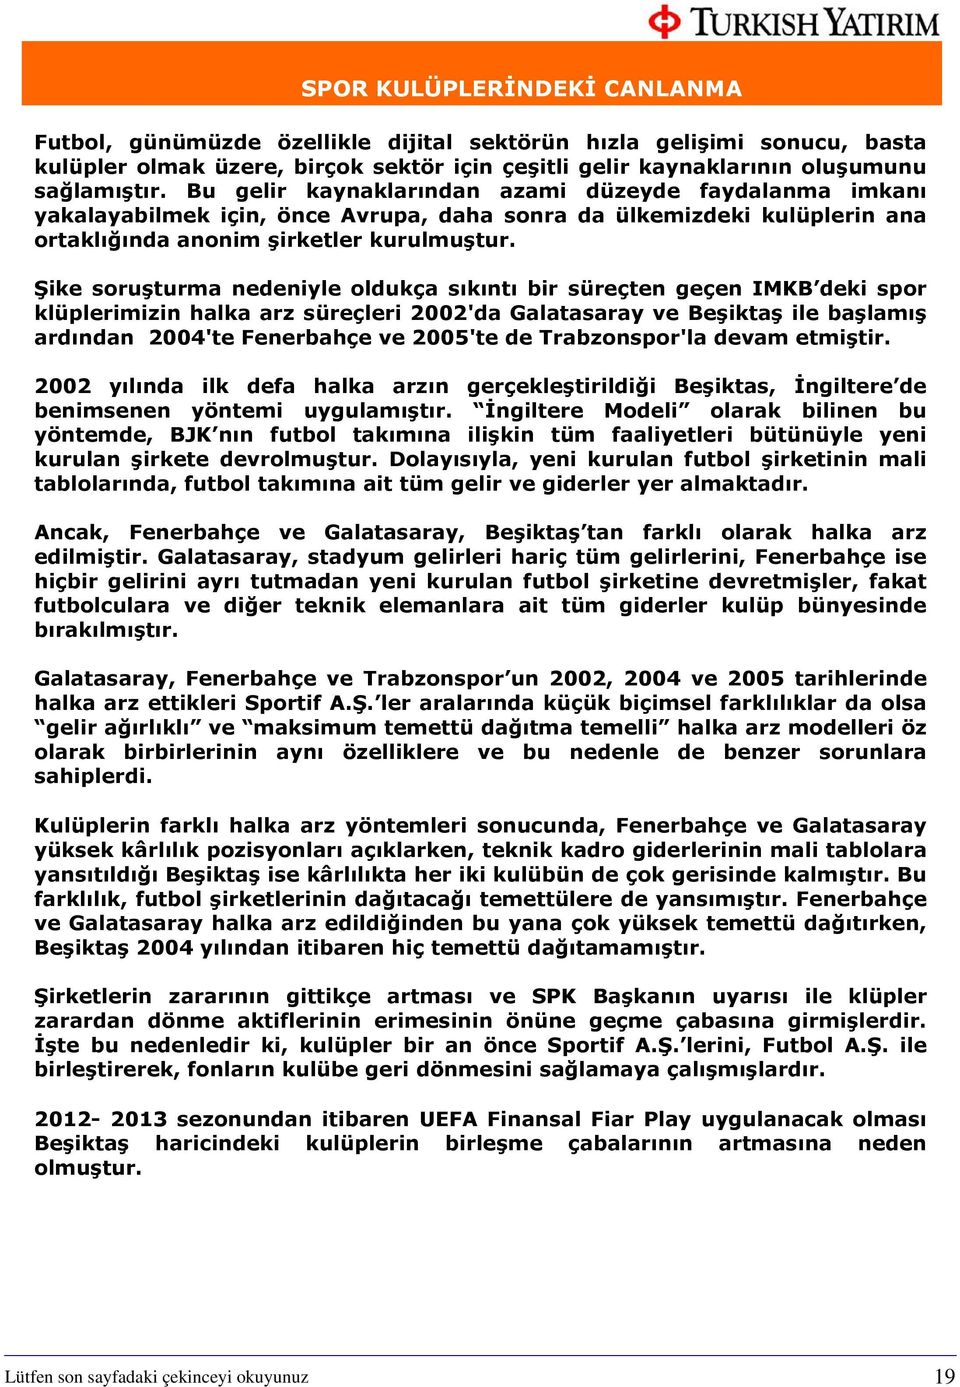 Şike soruşturma nedeniyle oldukça sıkıntı bir süreçten geçen IMKB deki spor klüplerimizin halka arz süreçleri 2002'da Galatasaray ve Beşiktaş ile başlamış ardından 2004'te Fenerbahçe ve 2005'te de